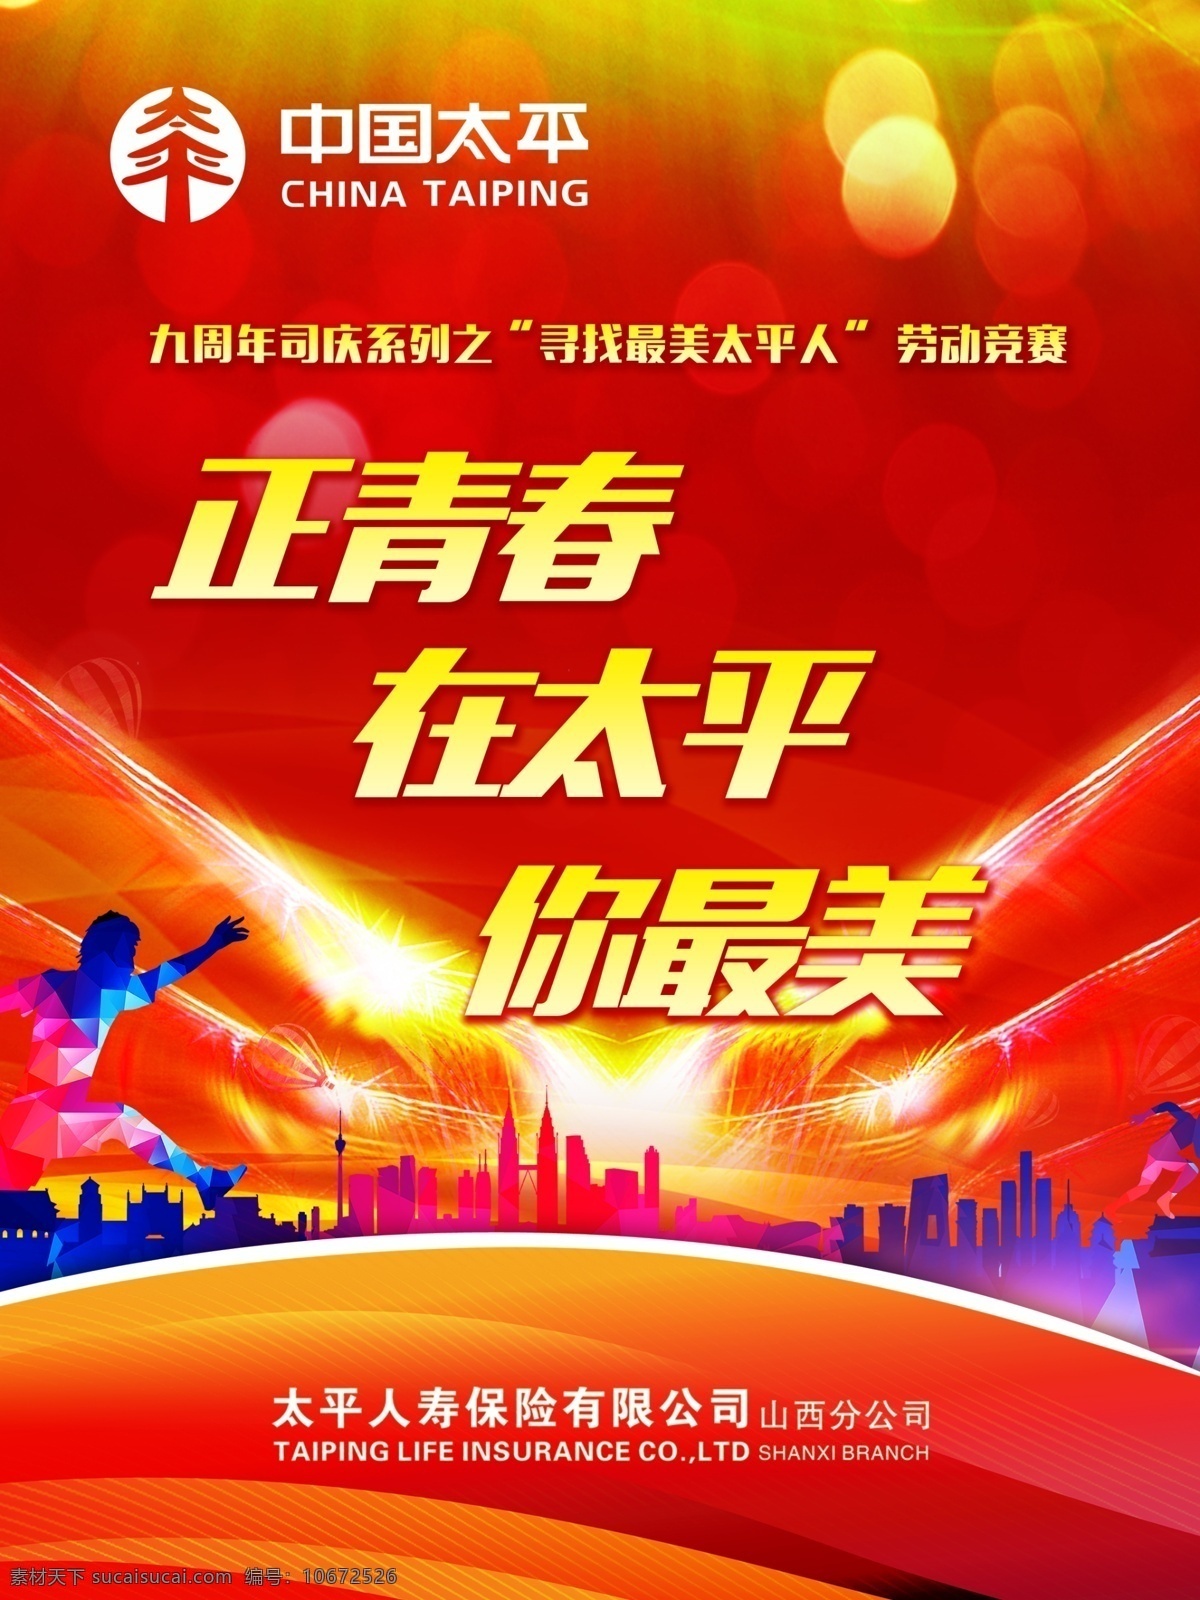 中国 太平 周年庆 中国太平 太平保险 太平海报 太平周年庆 山西太平 红色